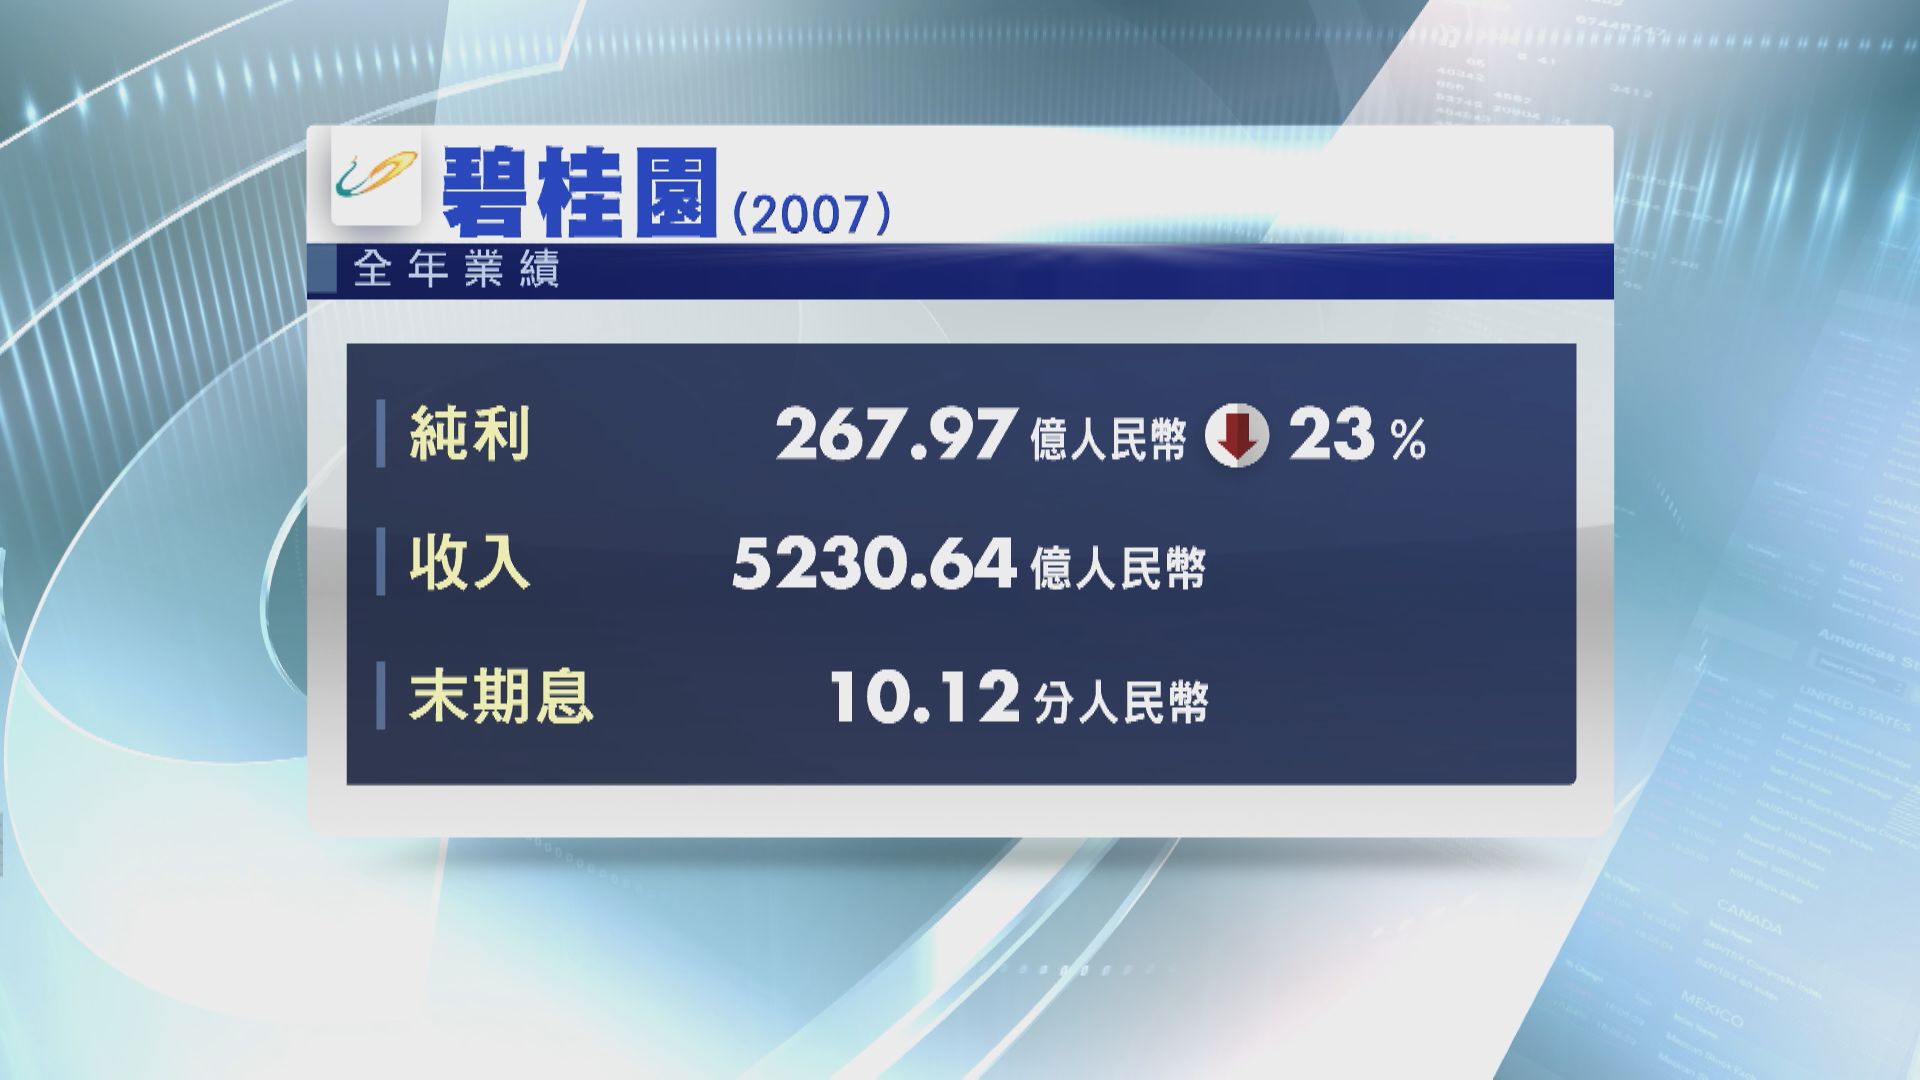 【藍籌業績】碧桂園核心盈利遜預期  末期息10.12分人幣